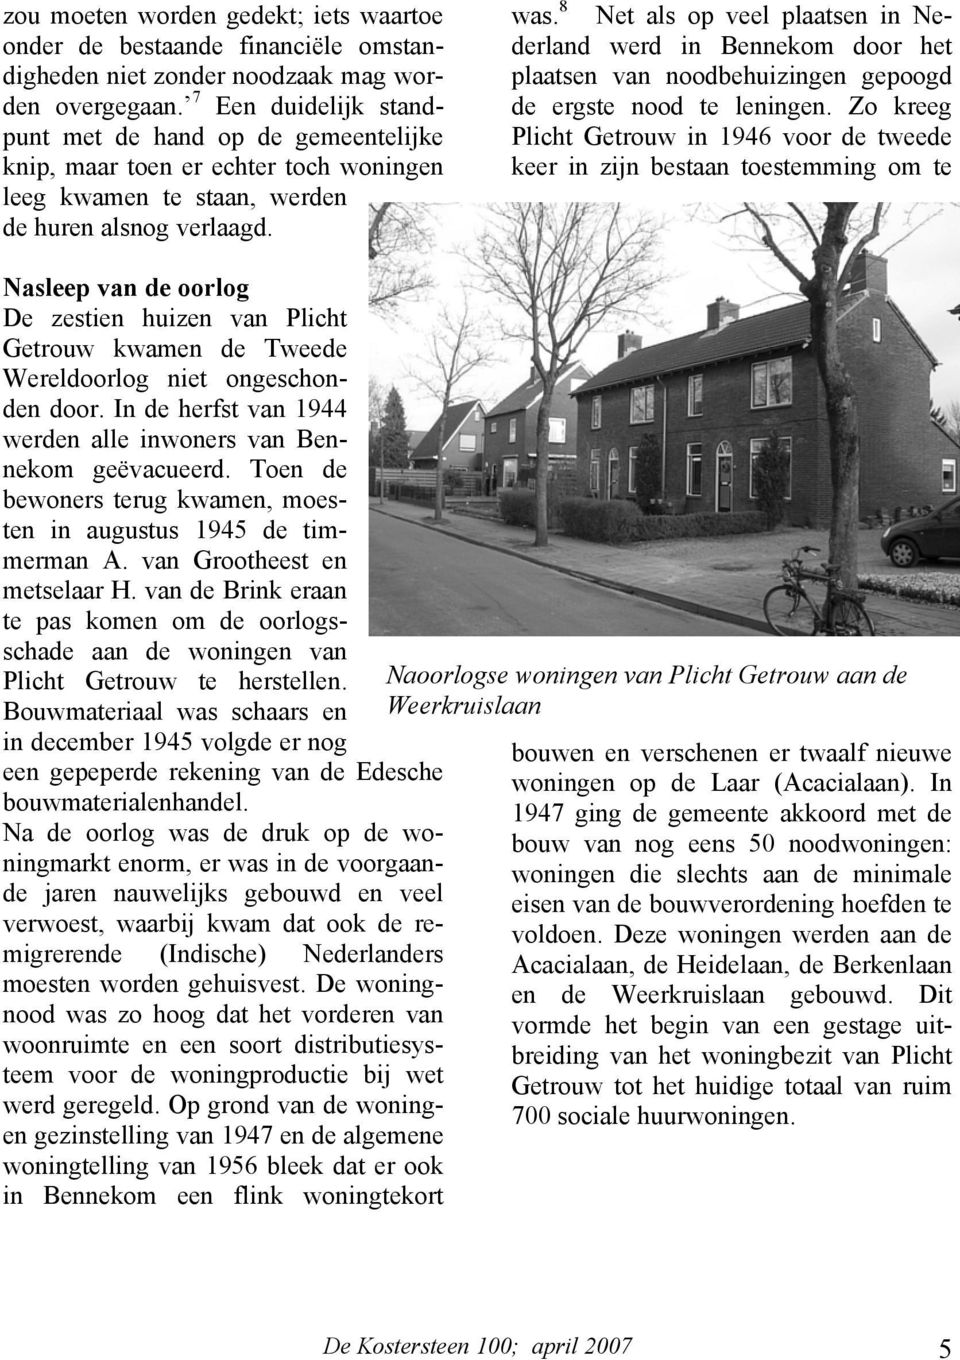 8 Net als op veel plaatsen in Nederland werd in Bennekom door het plaatsen van noodbehuizingen gepoogd de ergste nood te leningen.